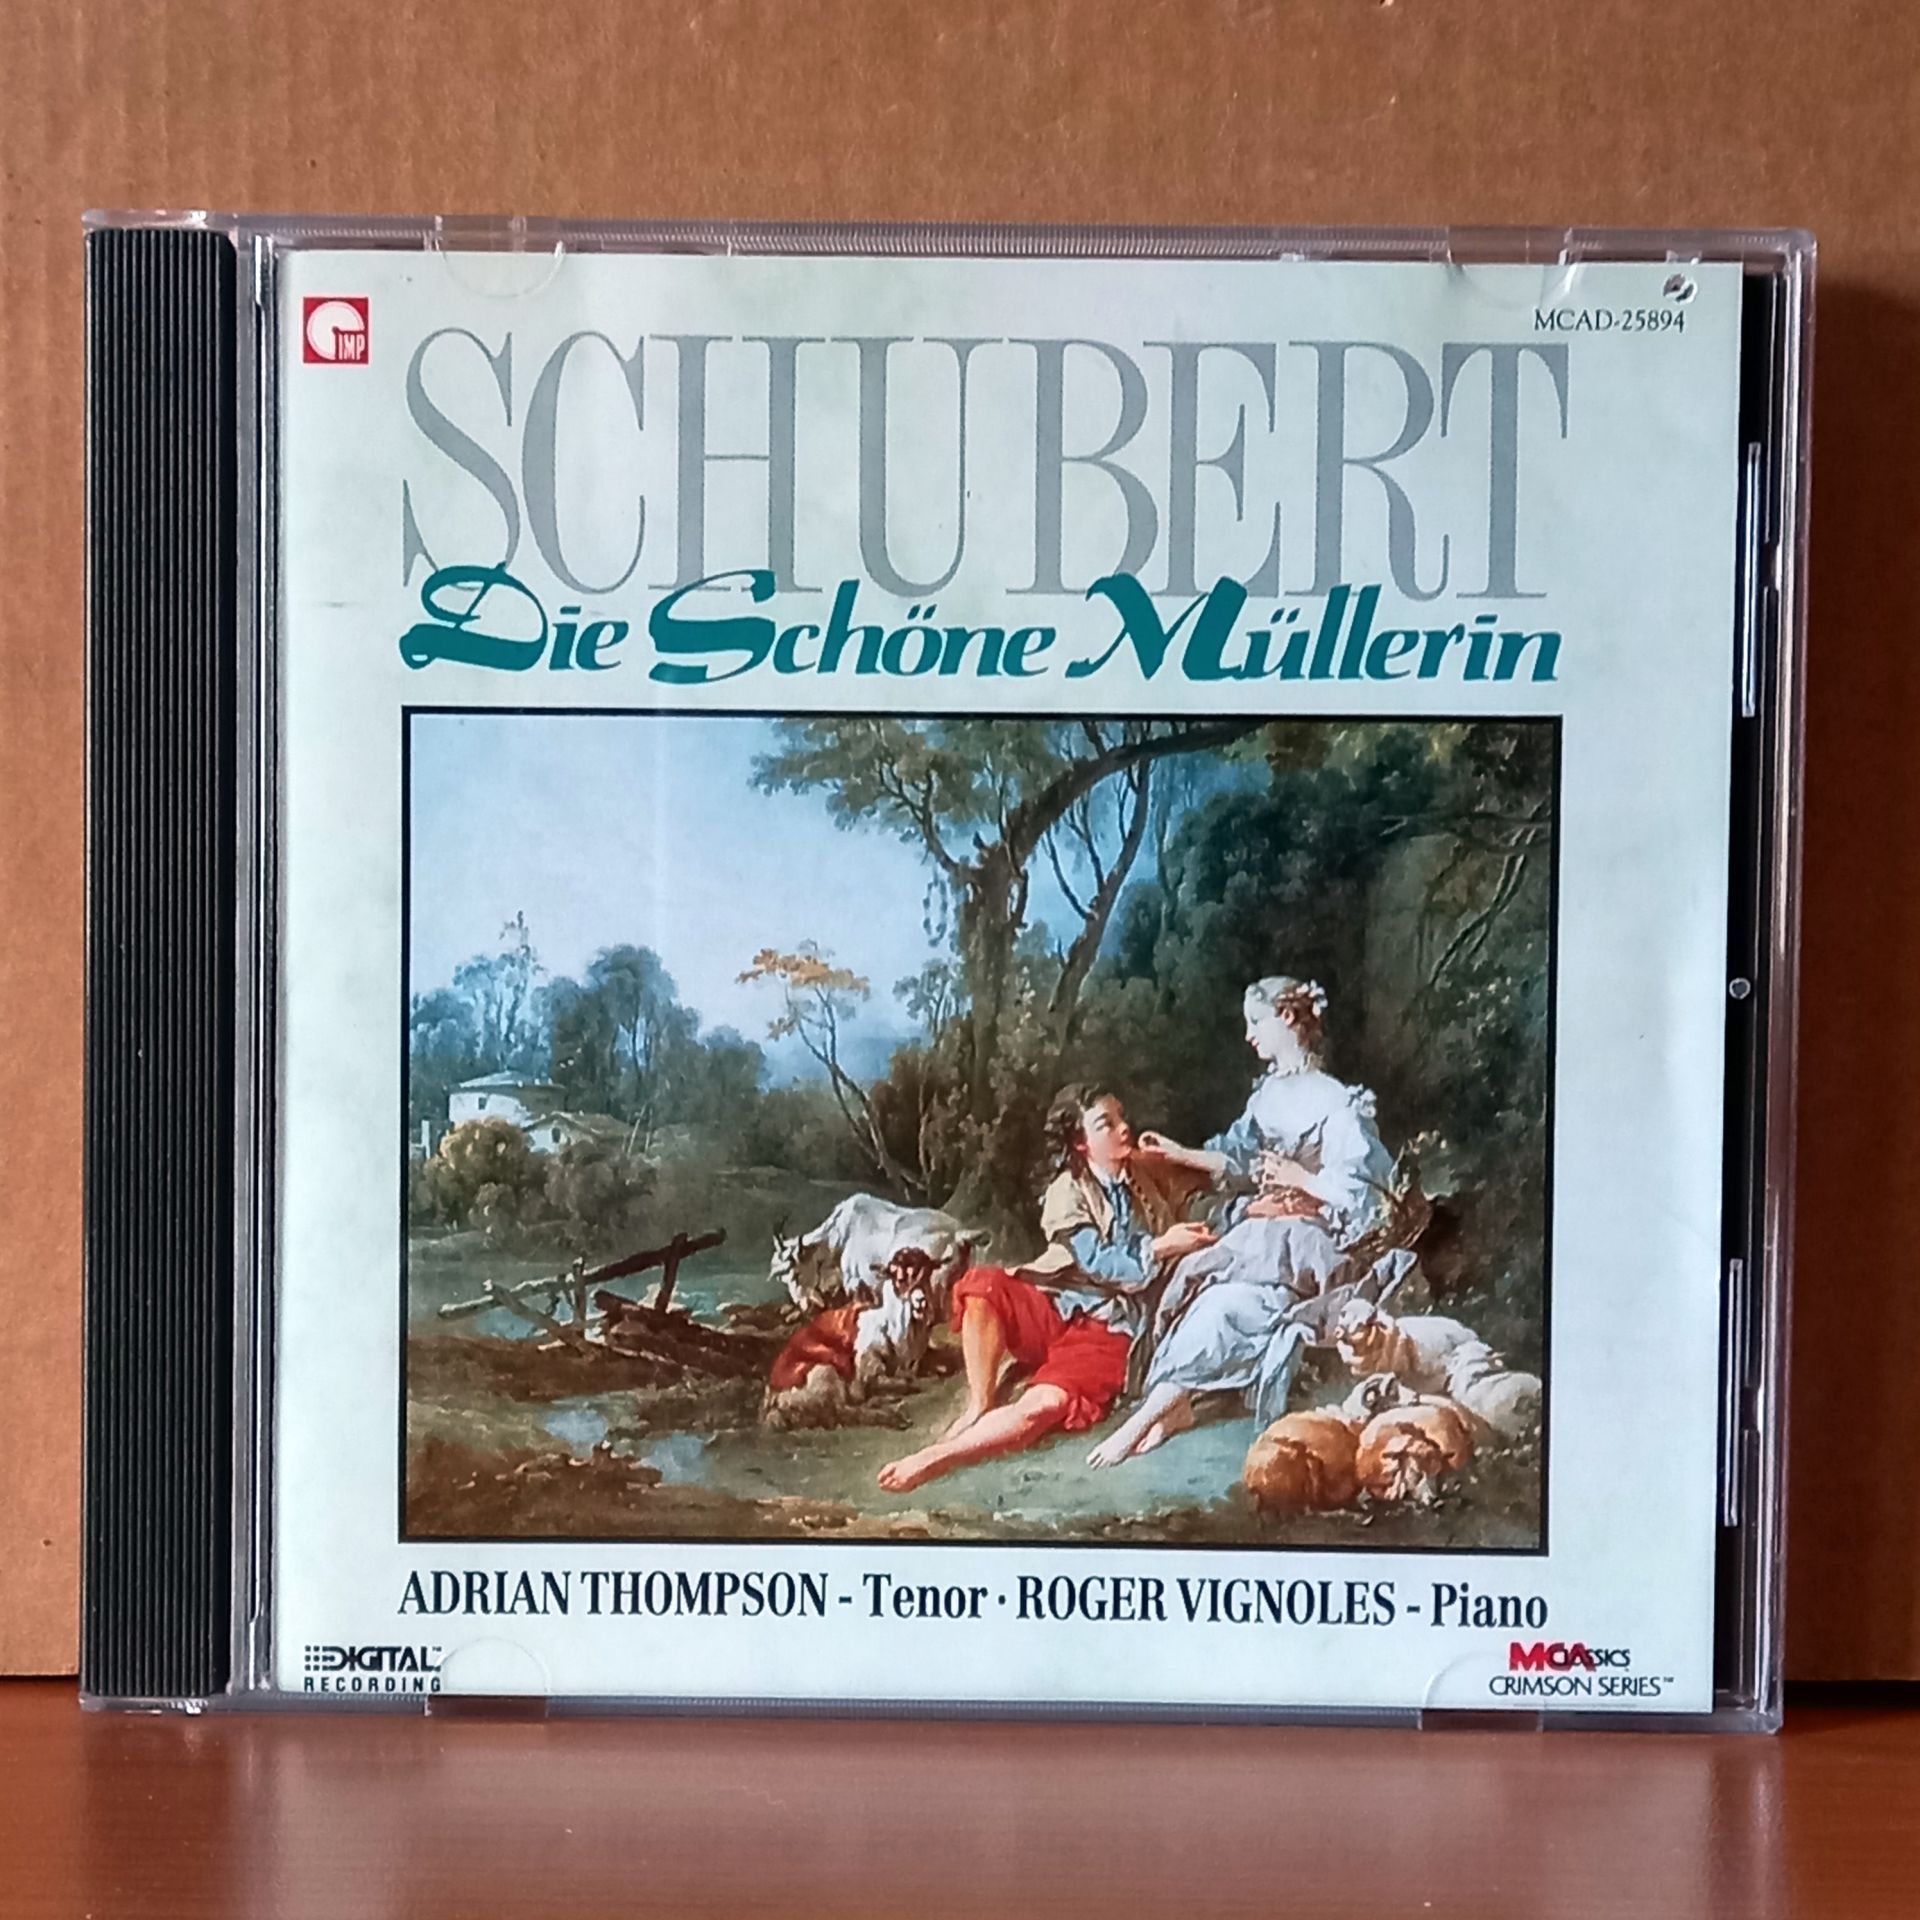 SCHUBERT: DIE SCHÖNE MÜLLERIN / ADRIAN THOMPSON, ROGER VIGNOLES (1989) - CD 2.EL